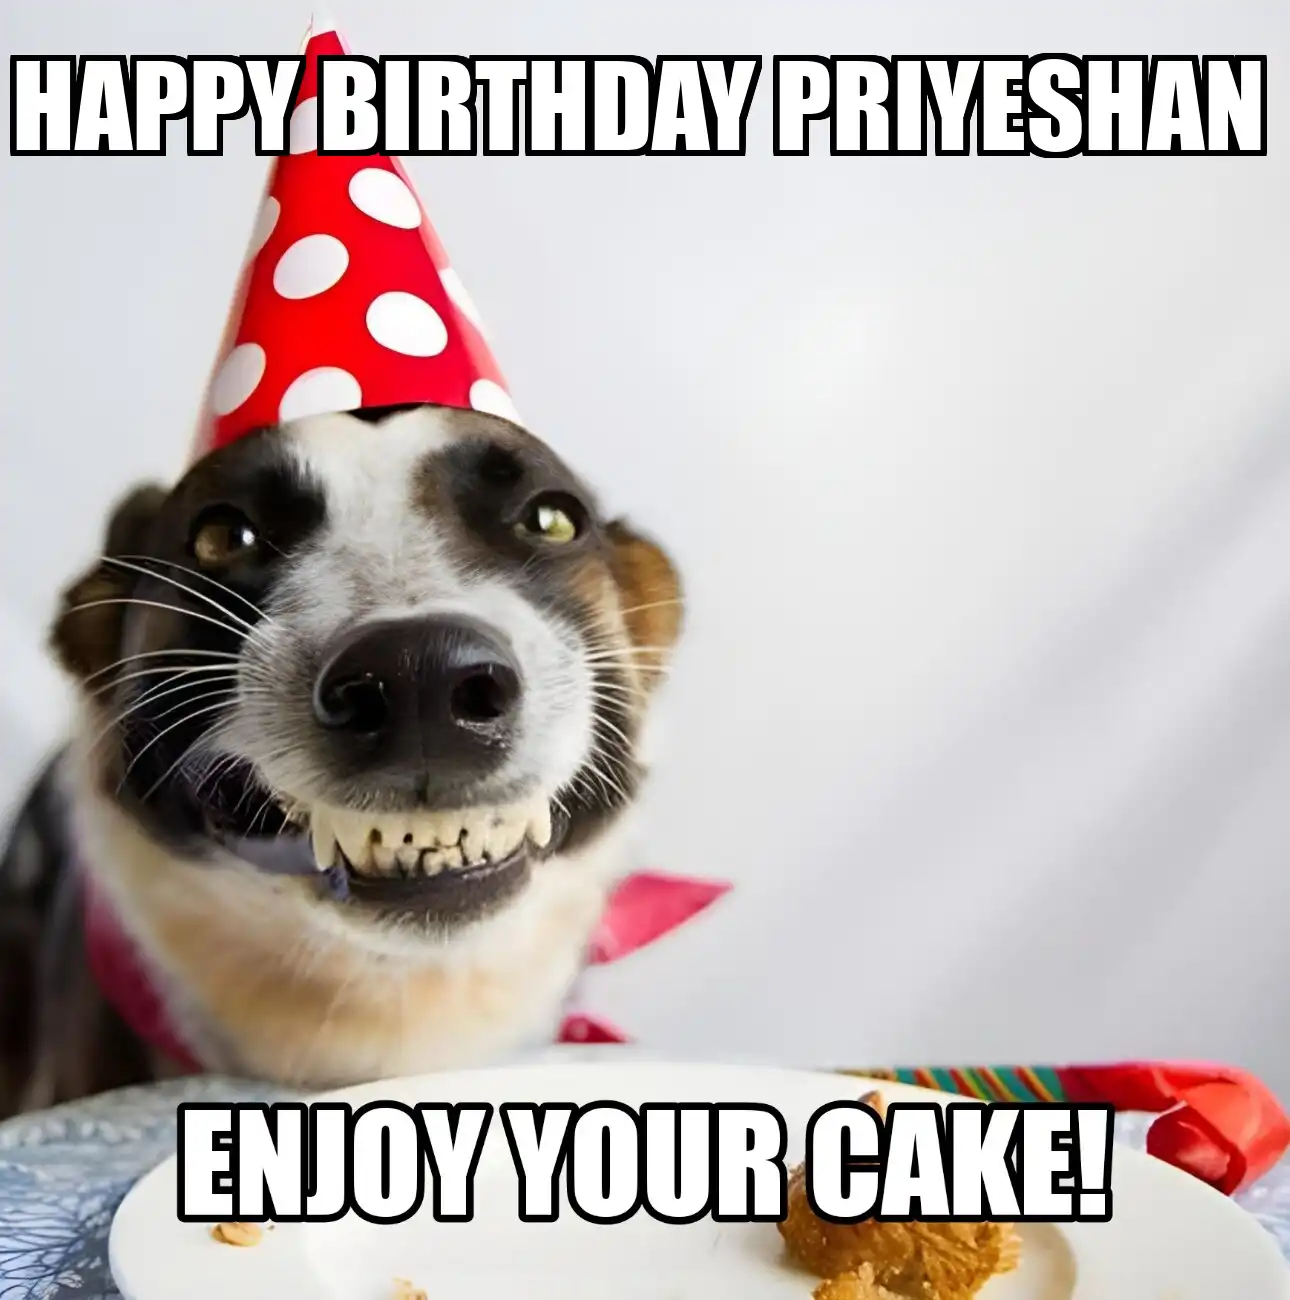 Happy Birthday Priyeshan Enjoy Your Cake Dog Meme